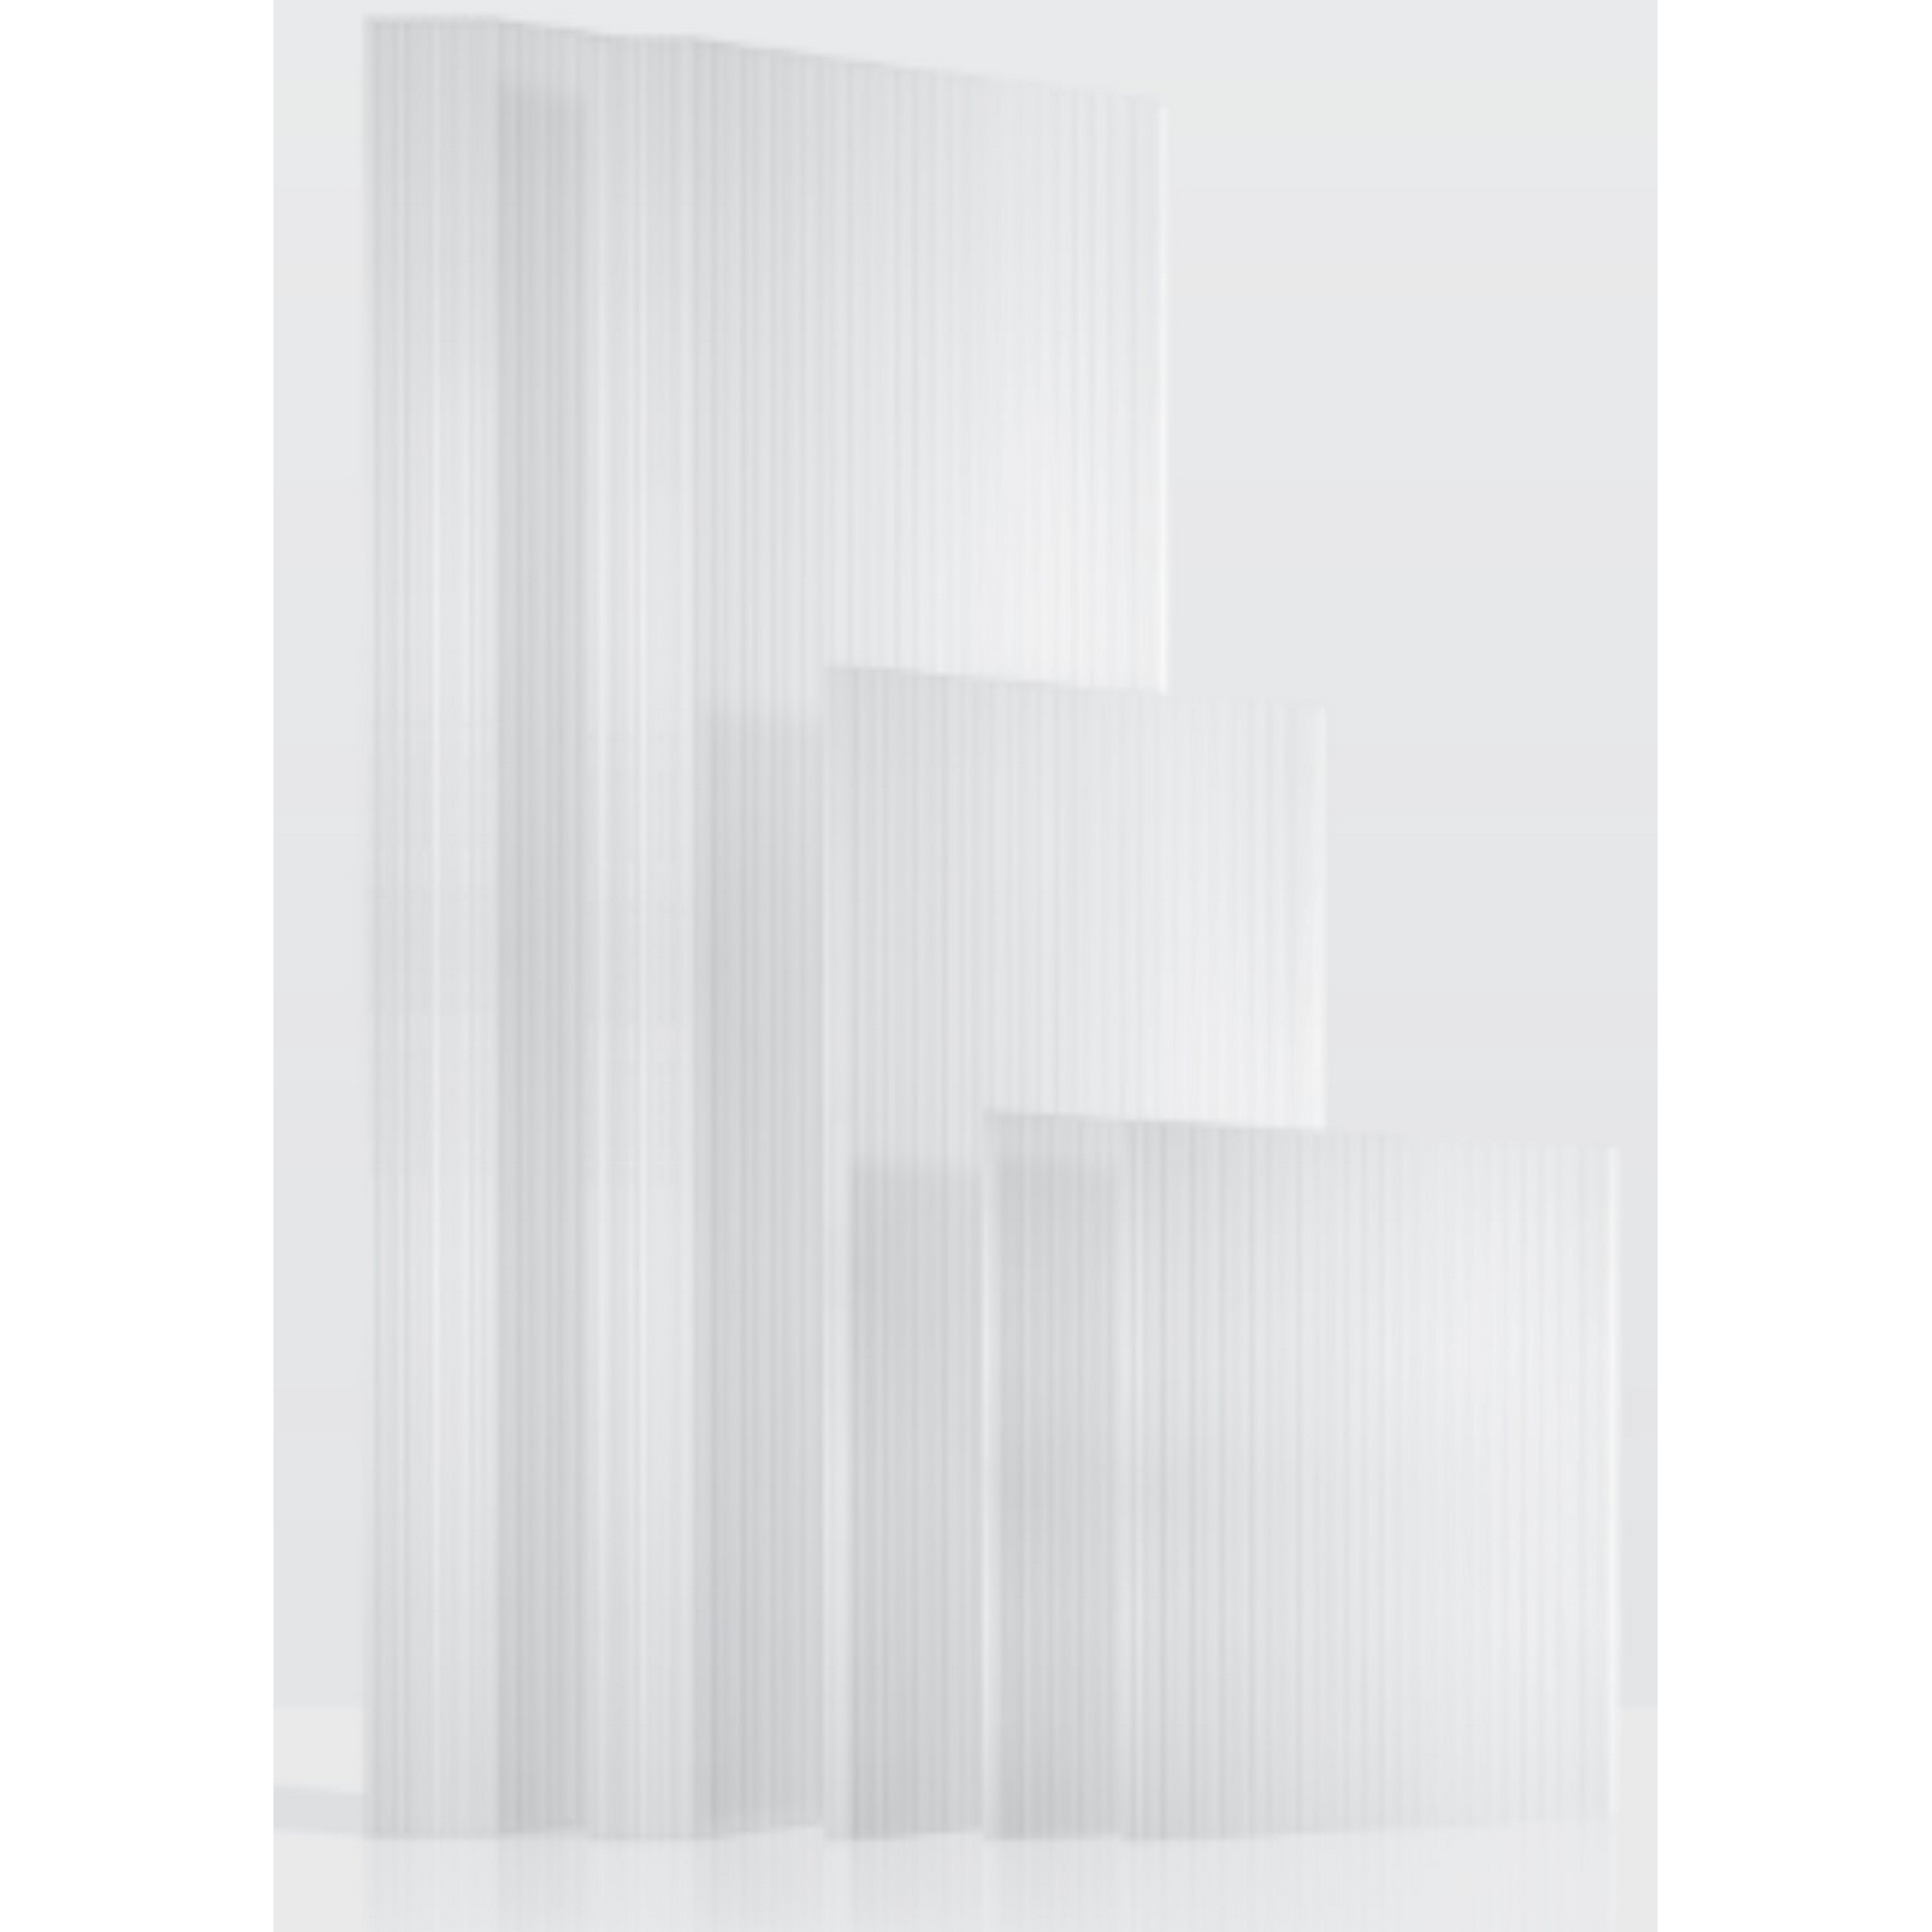 Hohlkammerplatten Gewächshaus 'Ergänzungsset 6' transparent 6 mm, 23-teilig + product picture